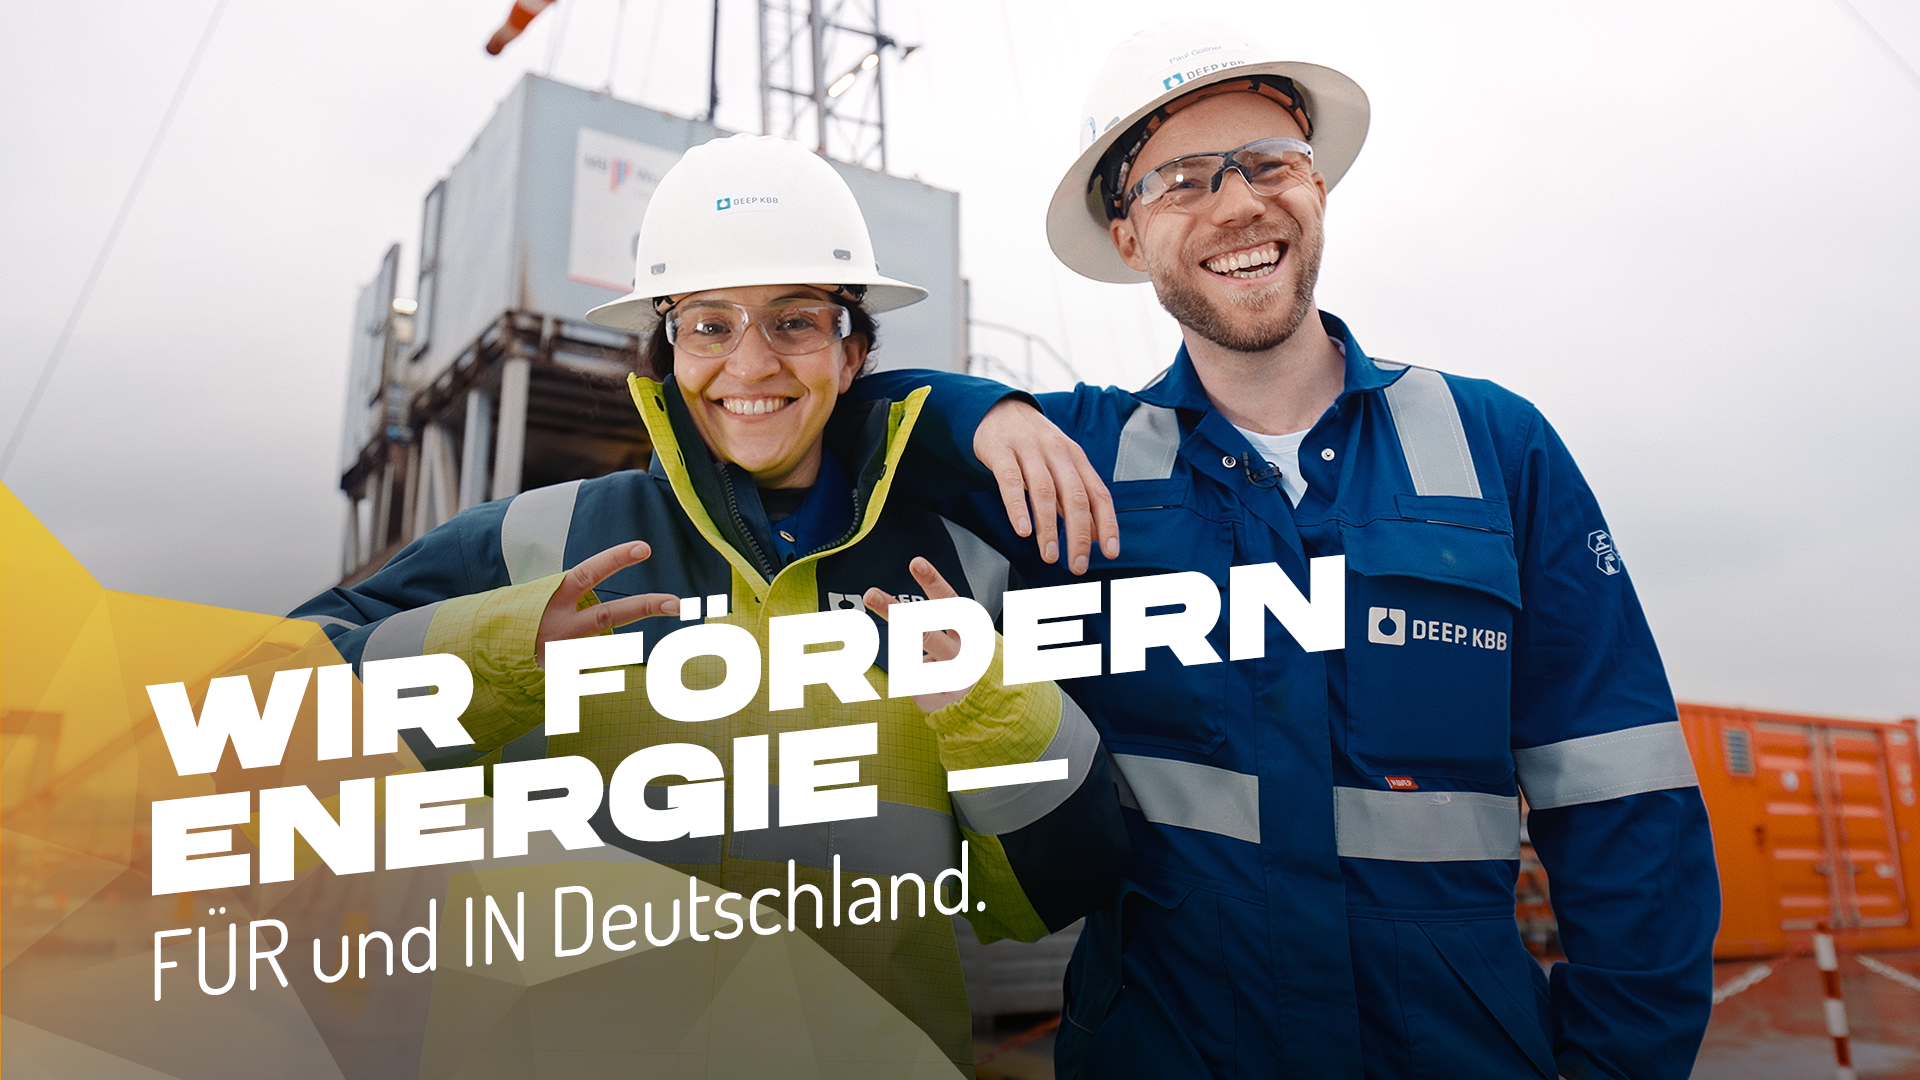 Wir fördern Energie FÜR und IN Deutschland.